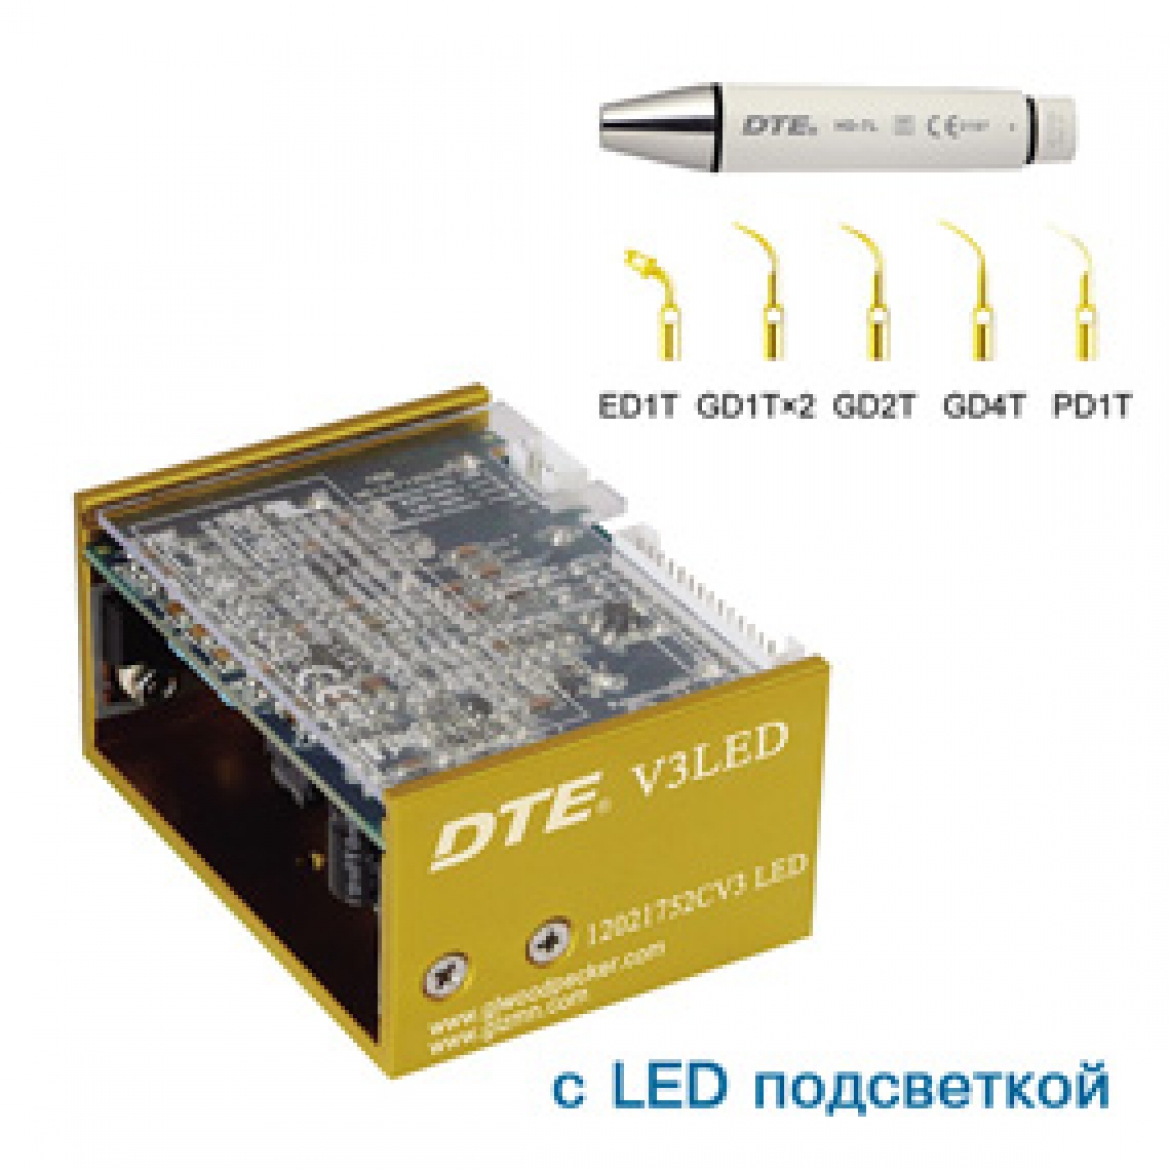 Cкалер ультразвуковой встраиваемый DTE-V3 LED подсветка